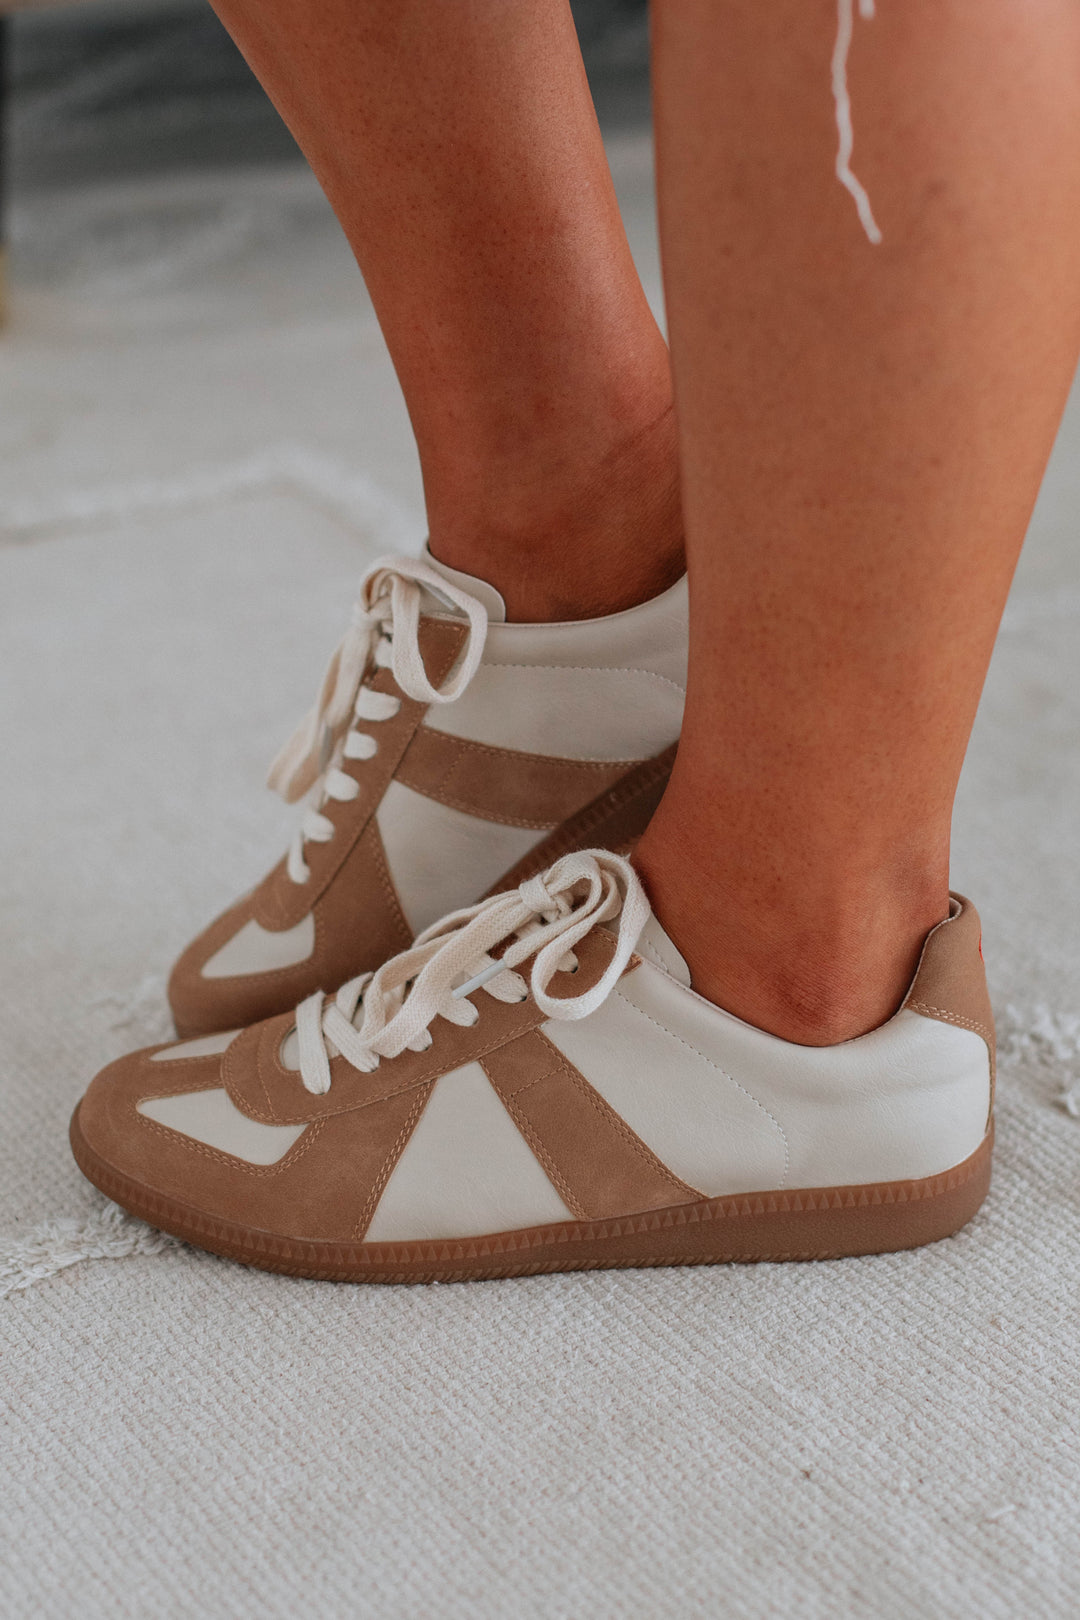 Sidewalk Strut Sneakers